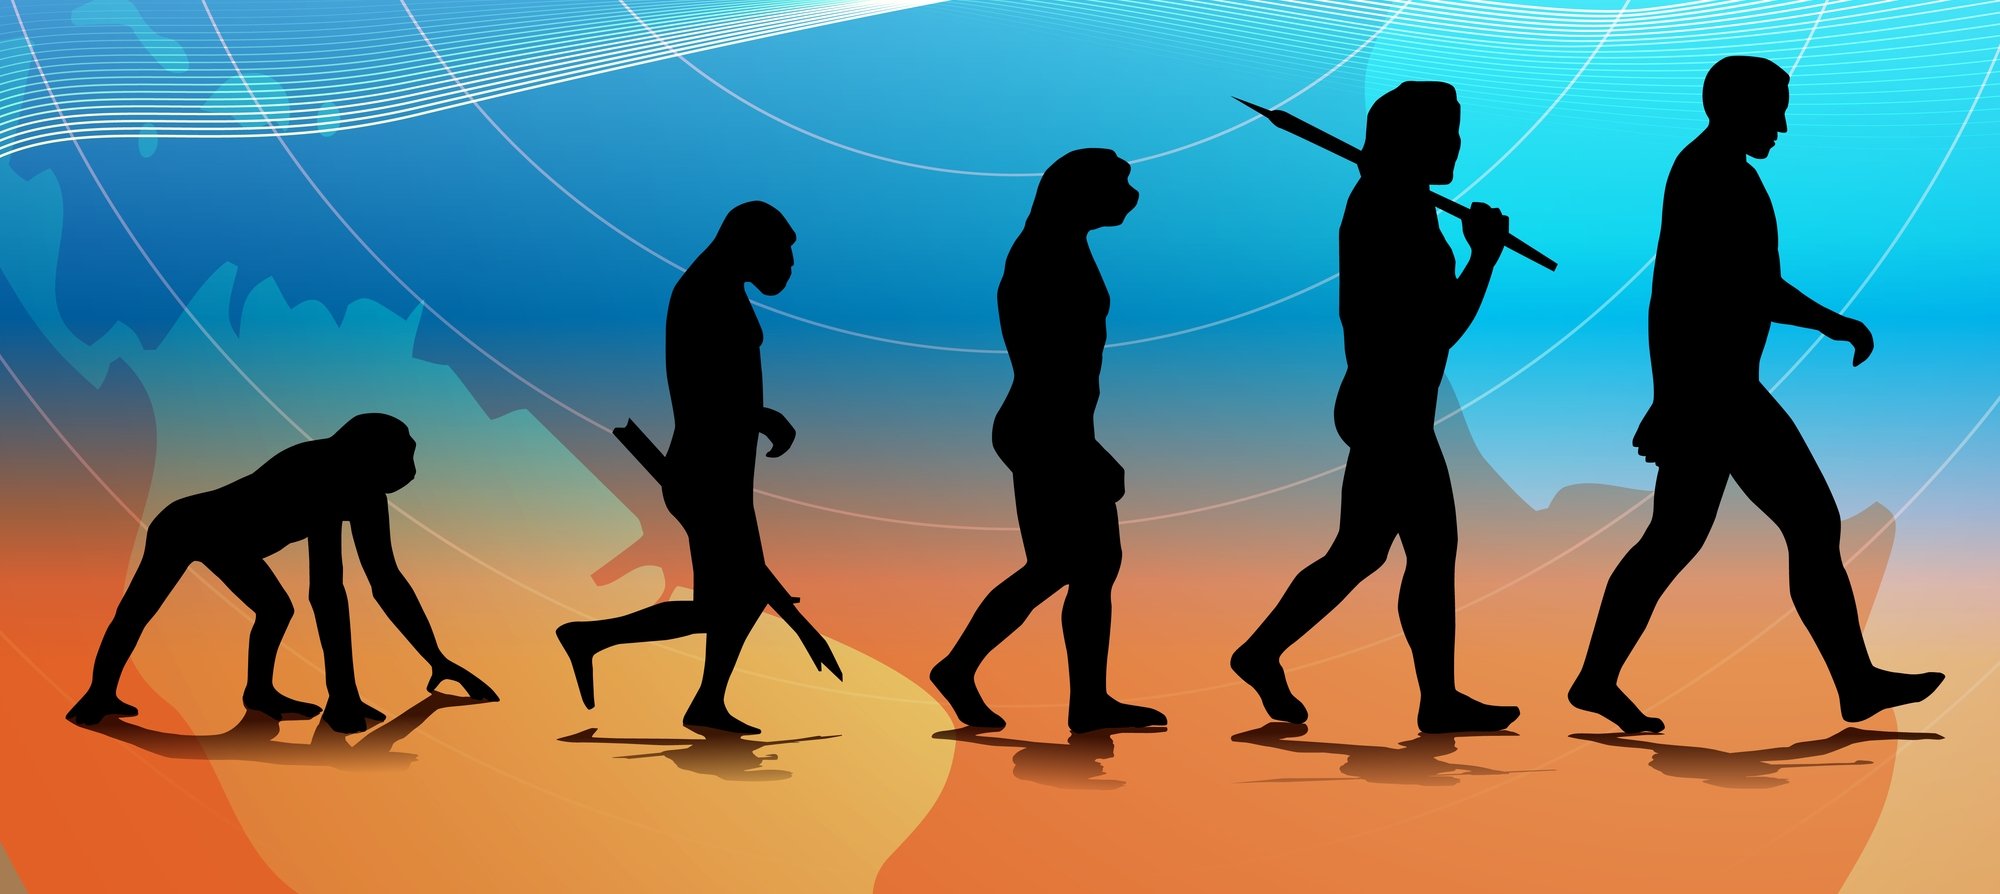 Эволюция становления общества. Эволюция человека. Становление человека. Развитие человека. Эволюция человека и общества.